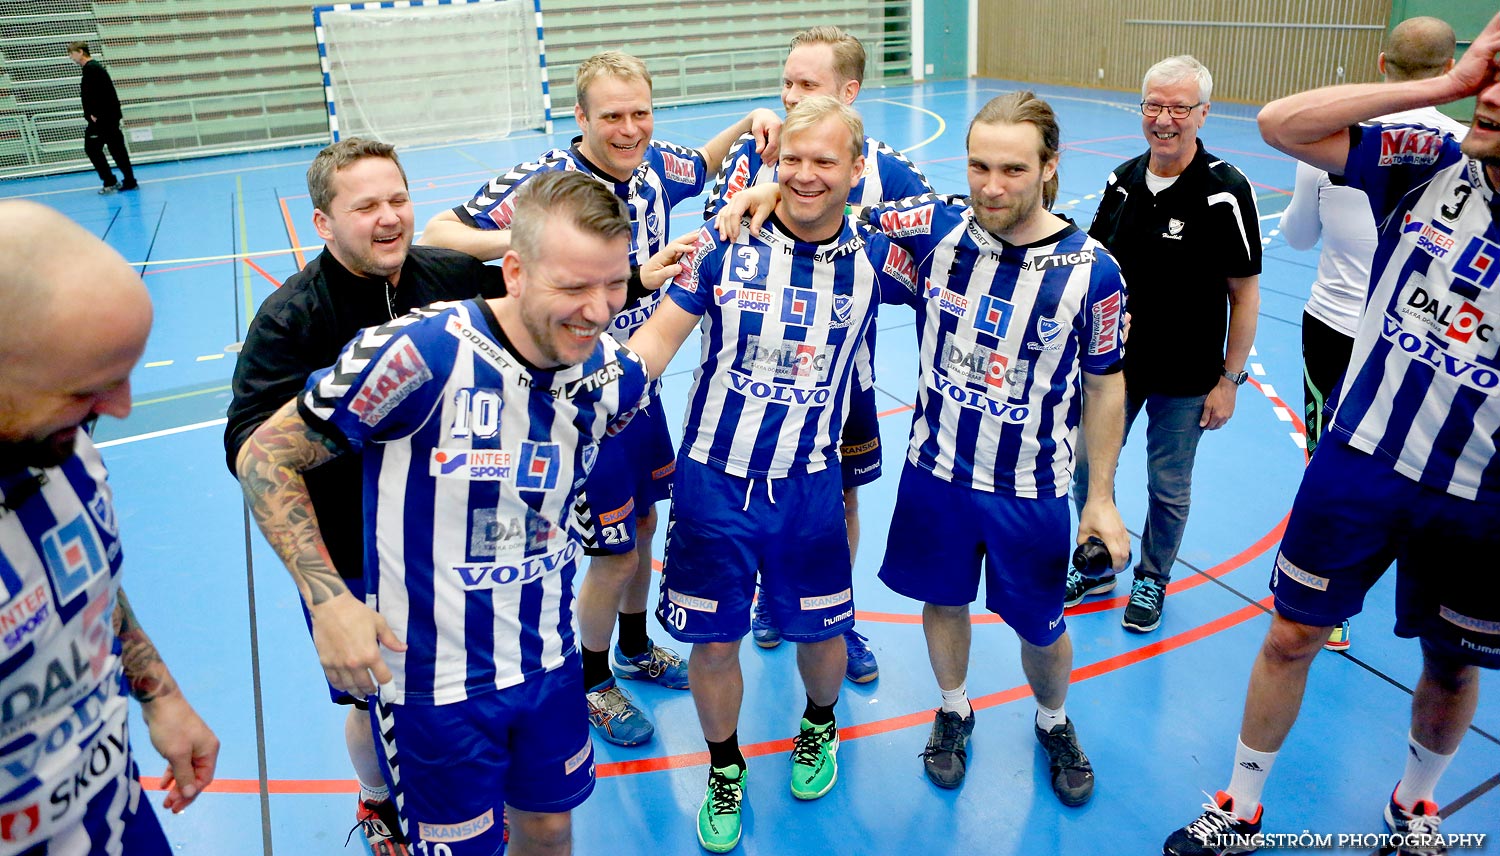 Trim-SM Herrar Bronsmatch Västra Frölunda IF-IFK Skövde HK 11-20,herr,Arena Skövde,Skövde,Sverige,Handboll,,2015,117091